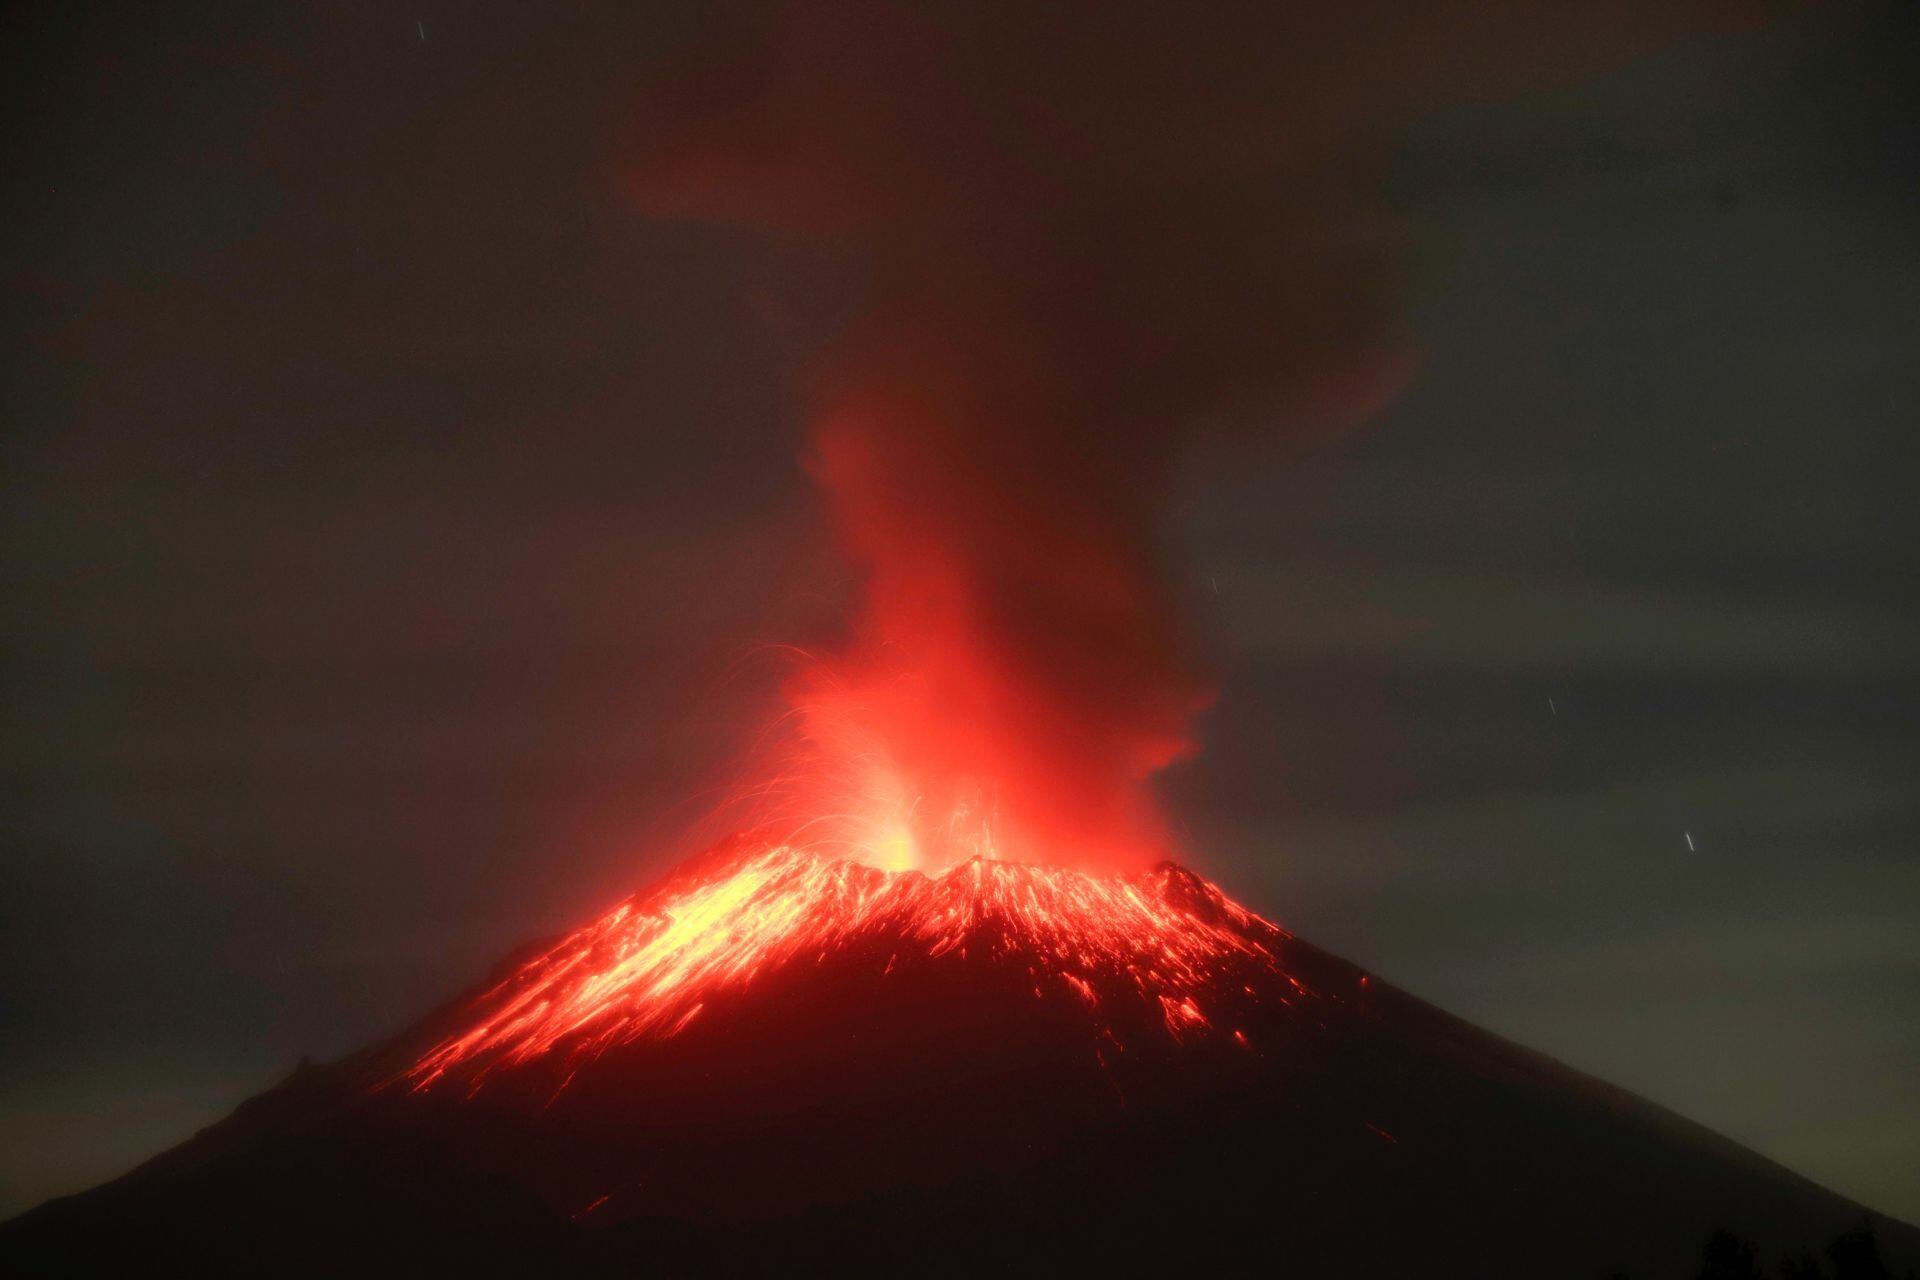 Volcán Popocatépetl: ¿Qué tipo de erupciones ha tenido?